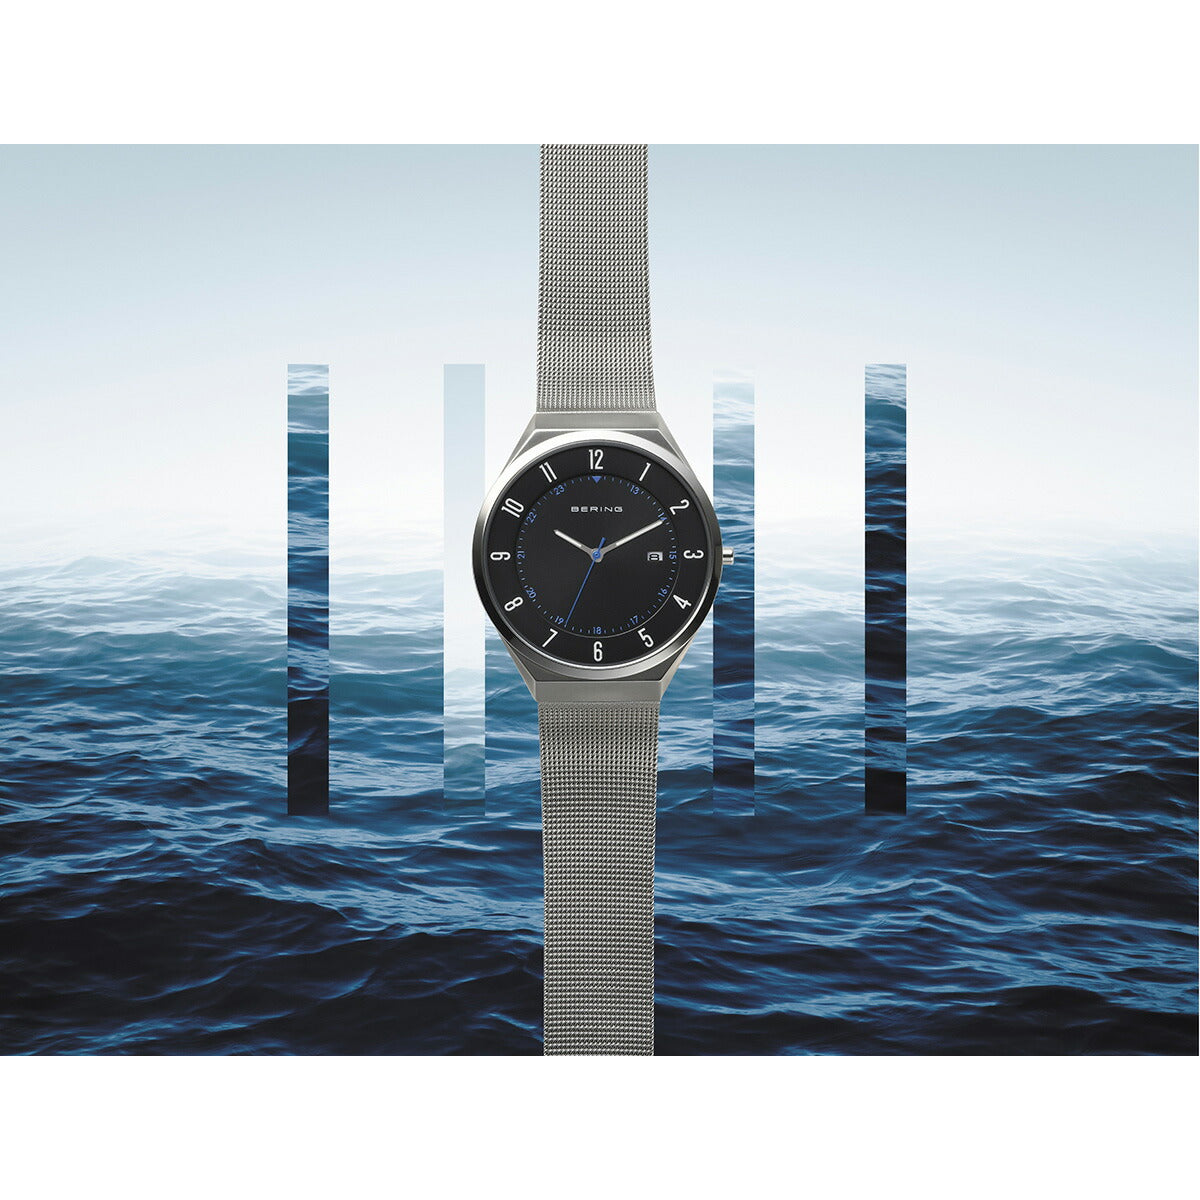 ベーリング BERING 日本限定モデル 腕時計 メンズ レディース オーシャン＆フォレスト OCEAN ＆ FOREST 18740-007